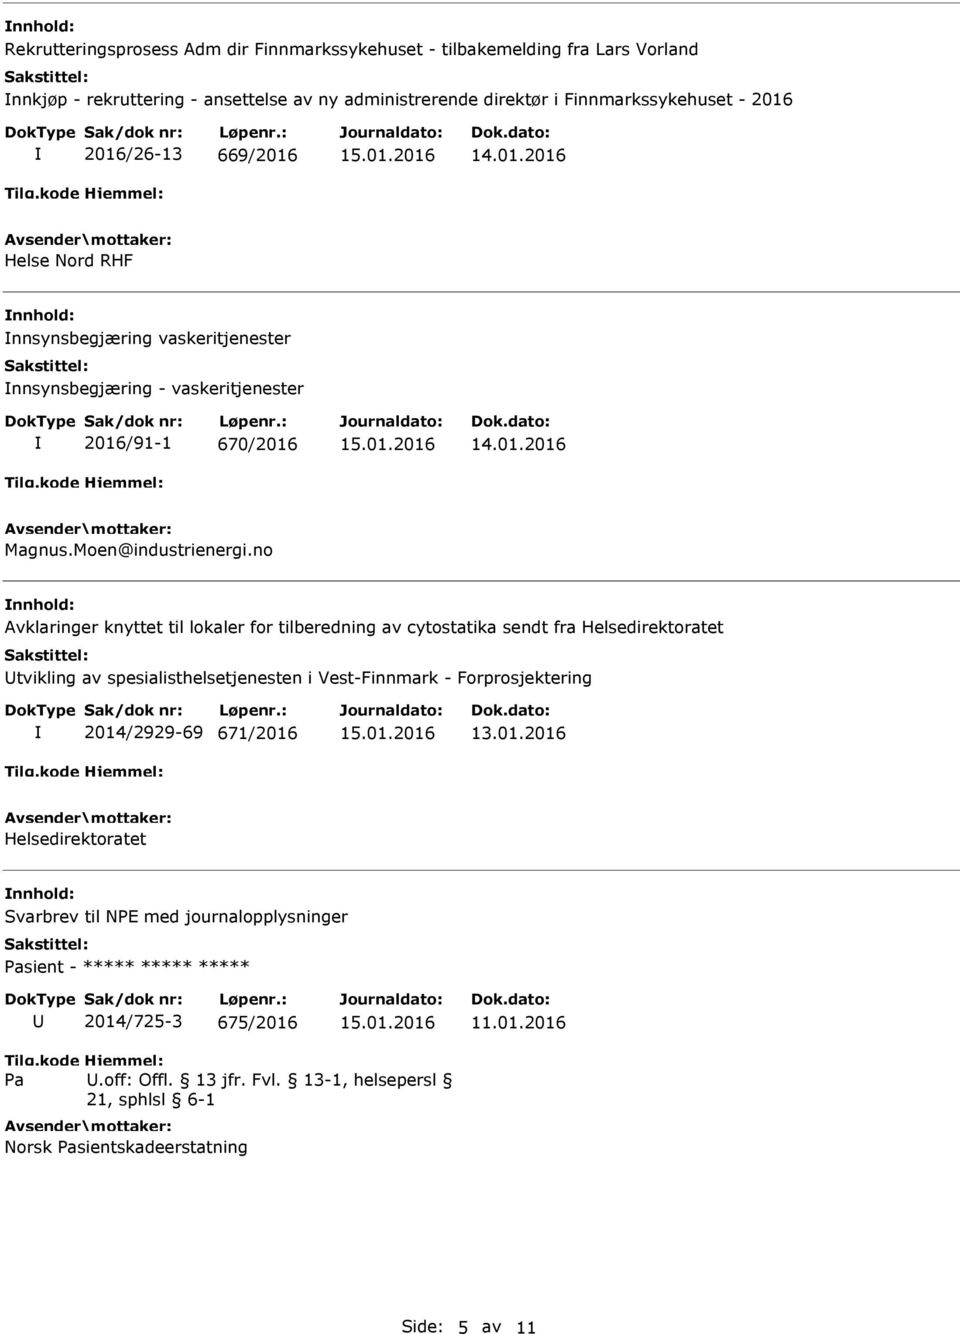 no nnhold: Avklaringer knyttet til lokaler for tilberedning av cytostatika sendt fra Helsedirektoratet Utvikling av spesialisthelsetjenesten i Vest-Finnmark - Forprosjektering